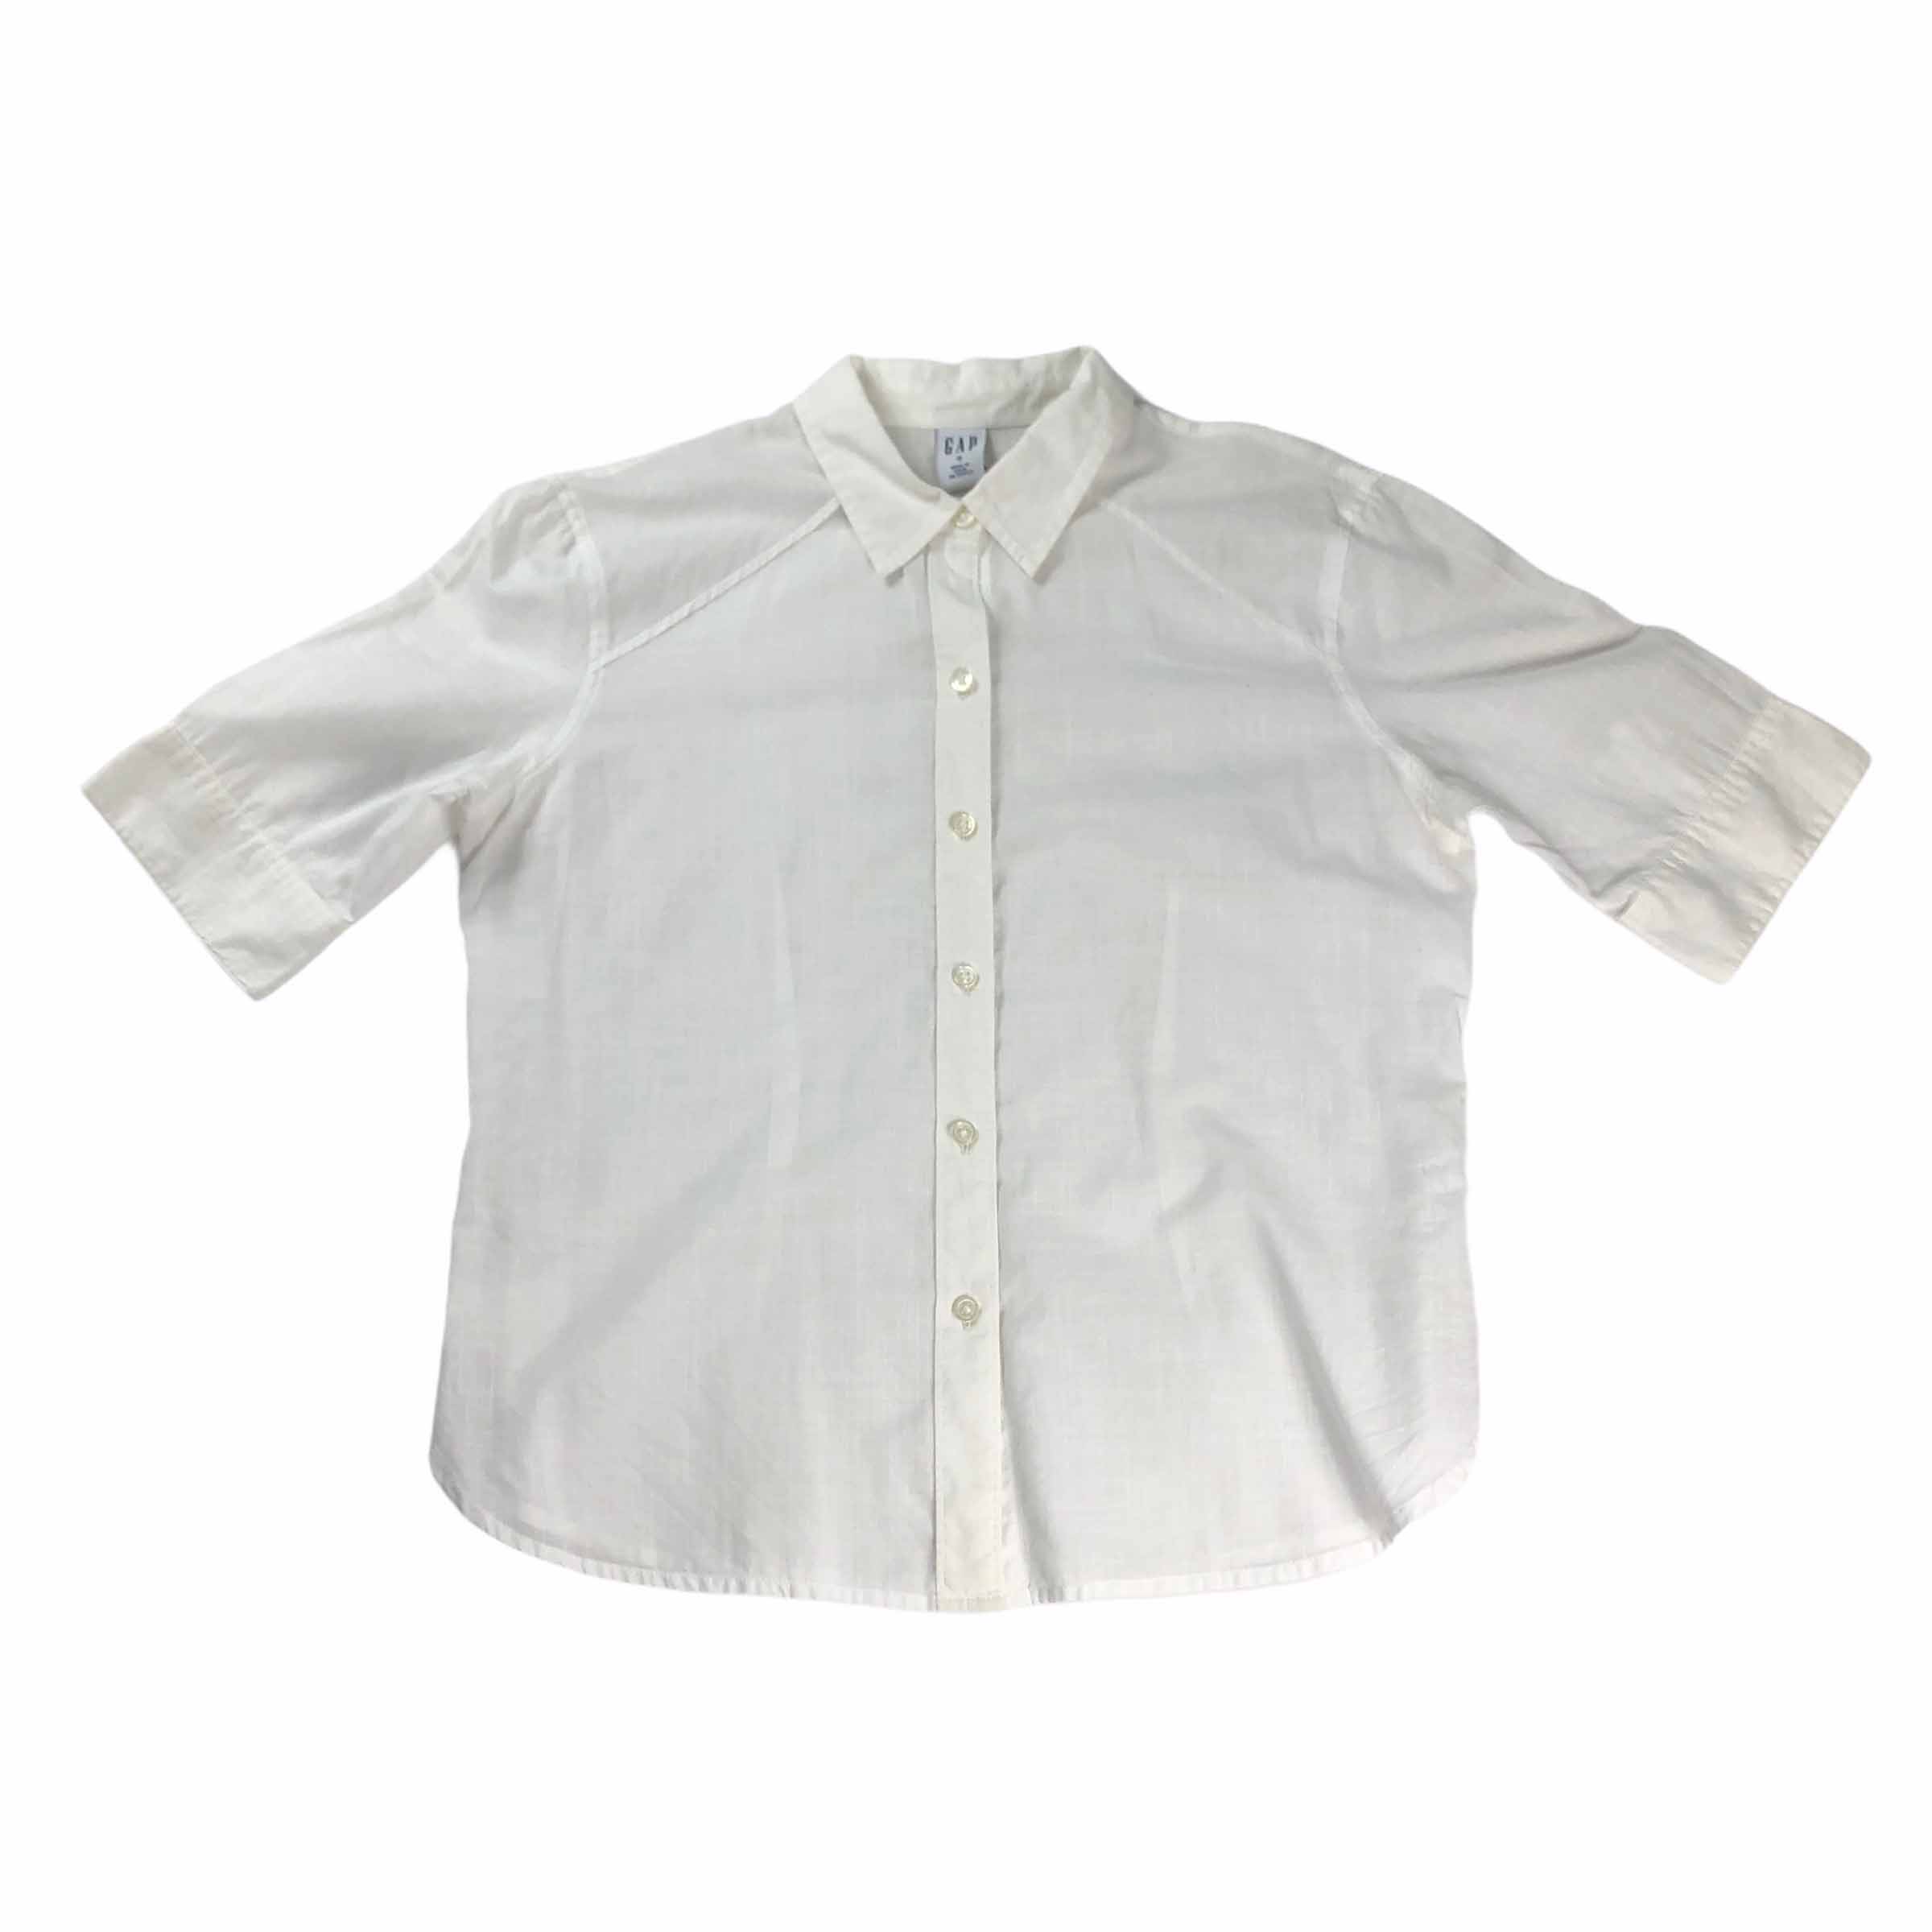 [Gap] Linen Shirt - Size S